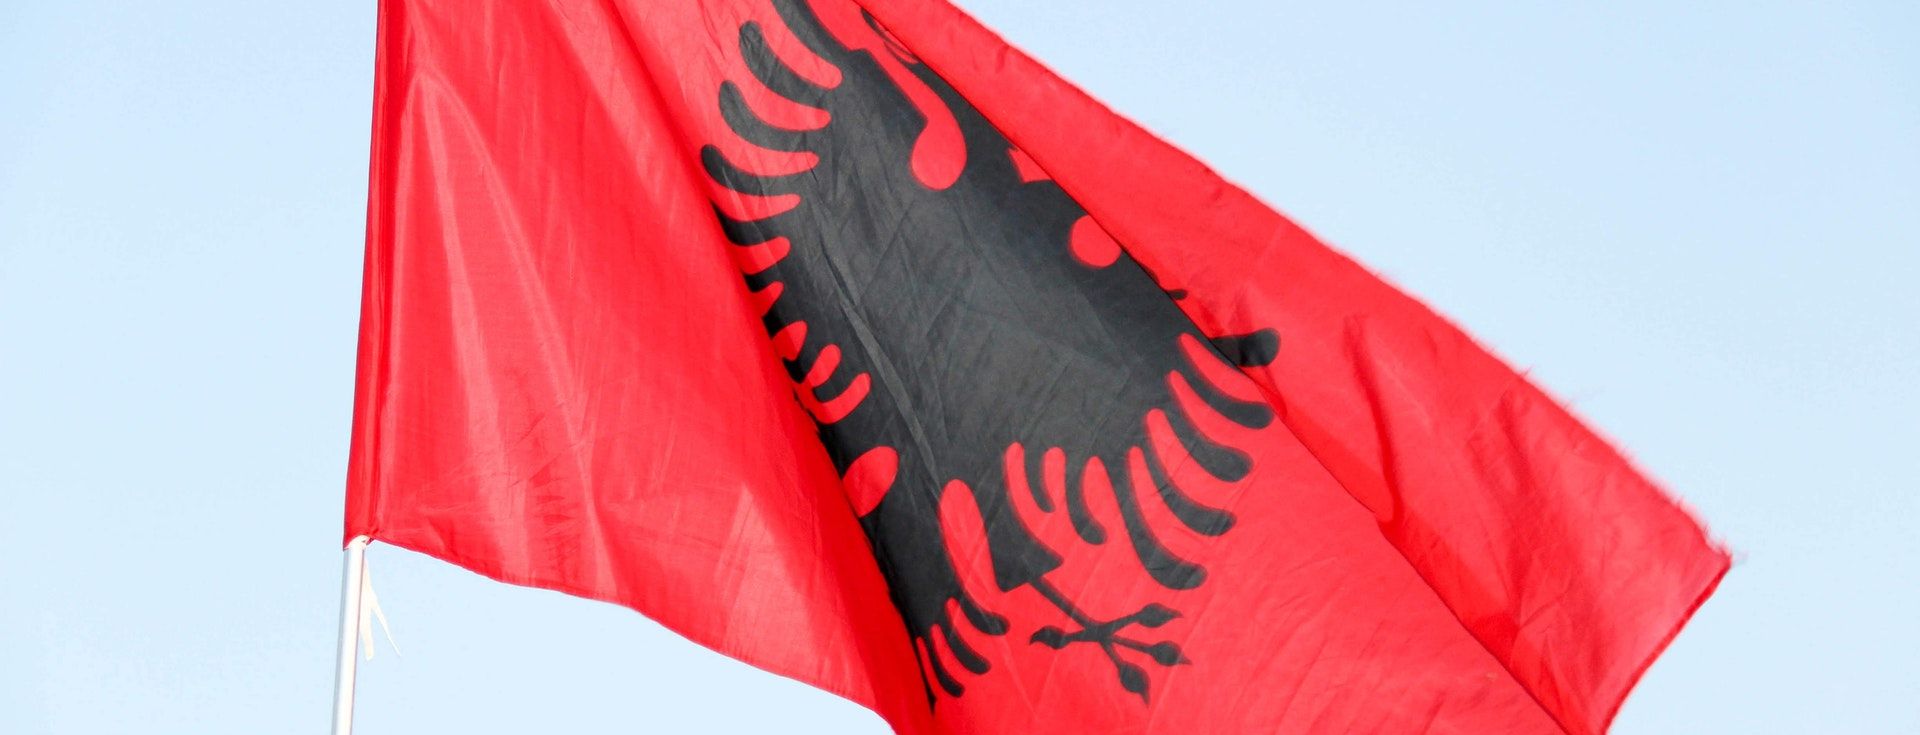 Après une vaste fuite de données, l’Albanie engage une société américaine